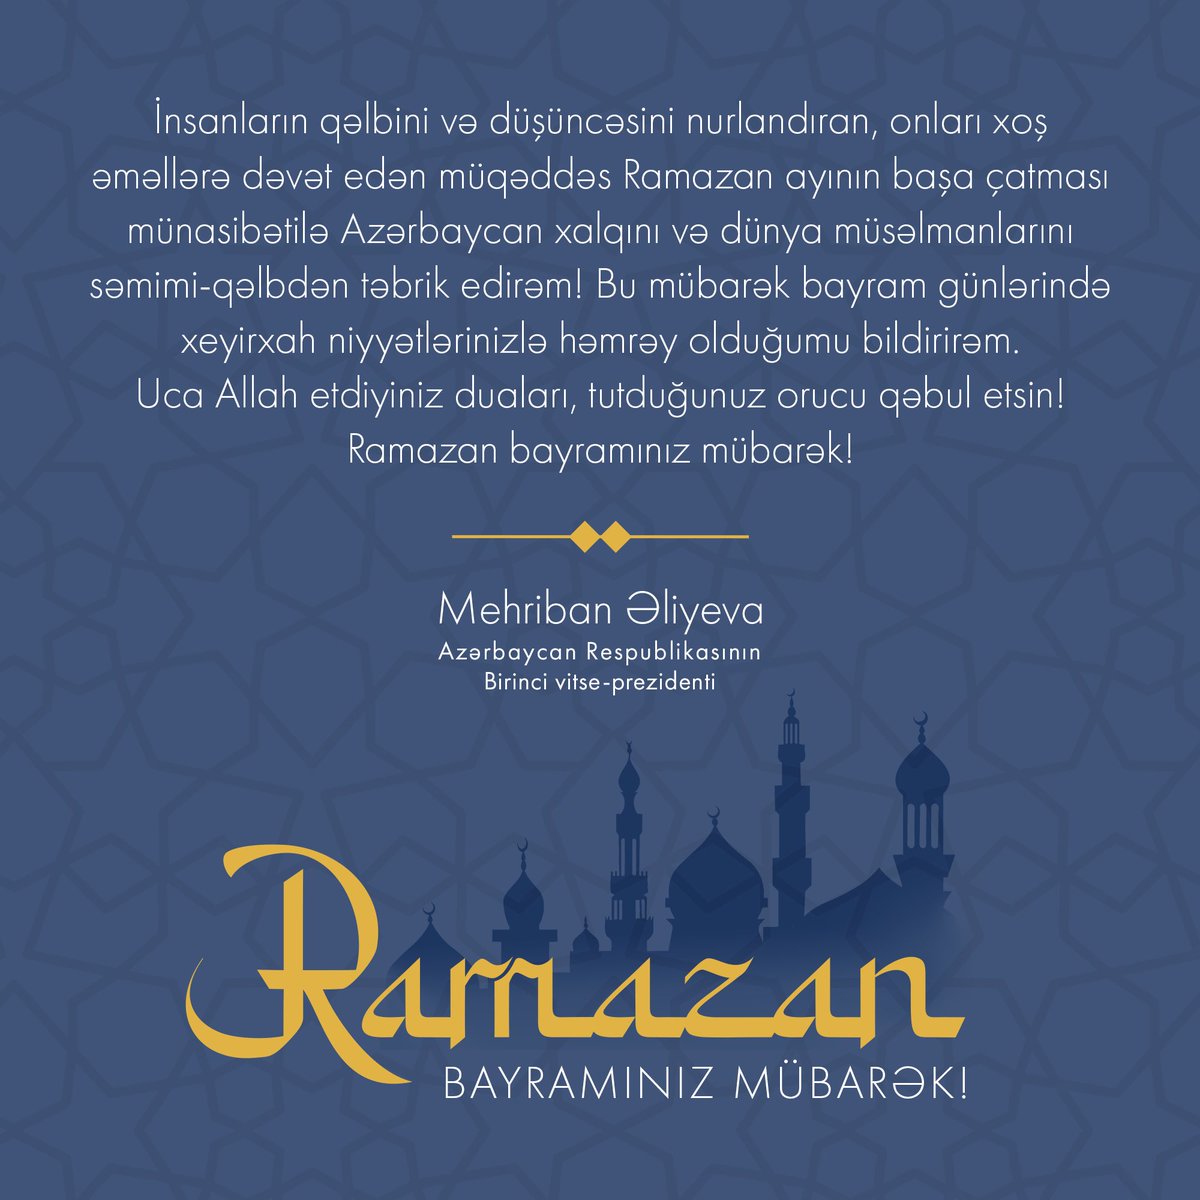 Искренне поздравляю азербайджанский народ и мусульман мира с завершением священного месяца Рамазан, просветляющего сердца и мысли людей, призывающего их к благим поступкам! В эти благословенные праздничные дни выражаю солидарность со всеми вашими добрыми намерениями. Да услышит